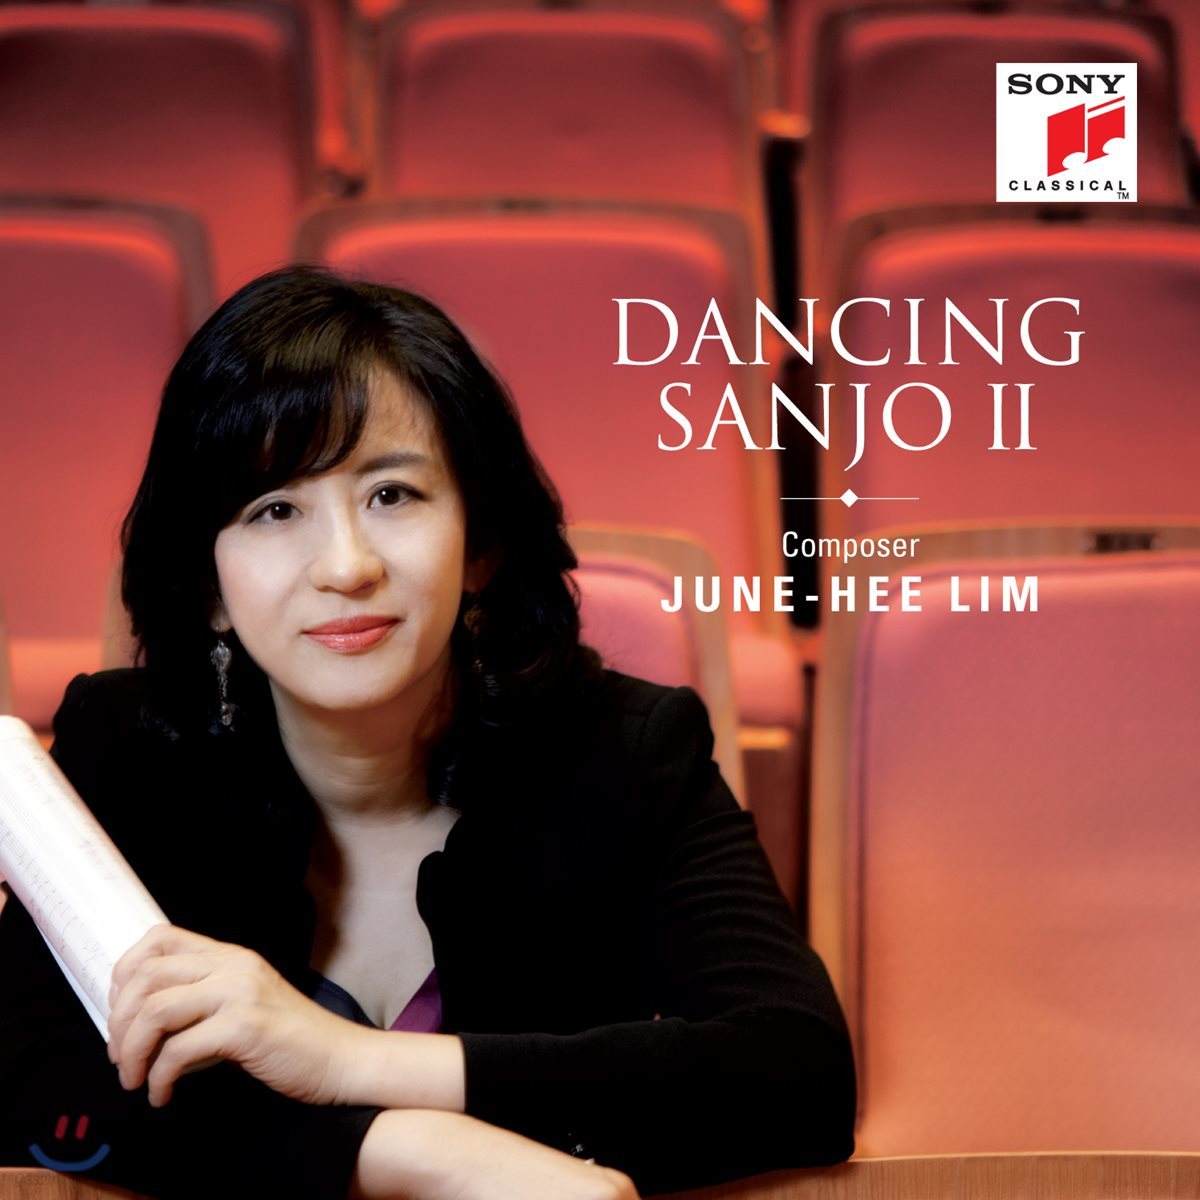 임준희 - 댄싱 산조 2 (Dancing Sanjo II)